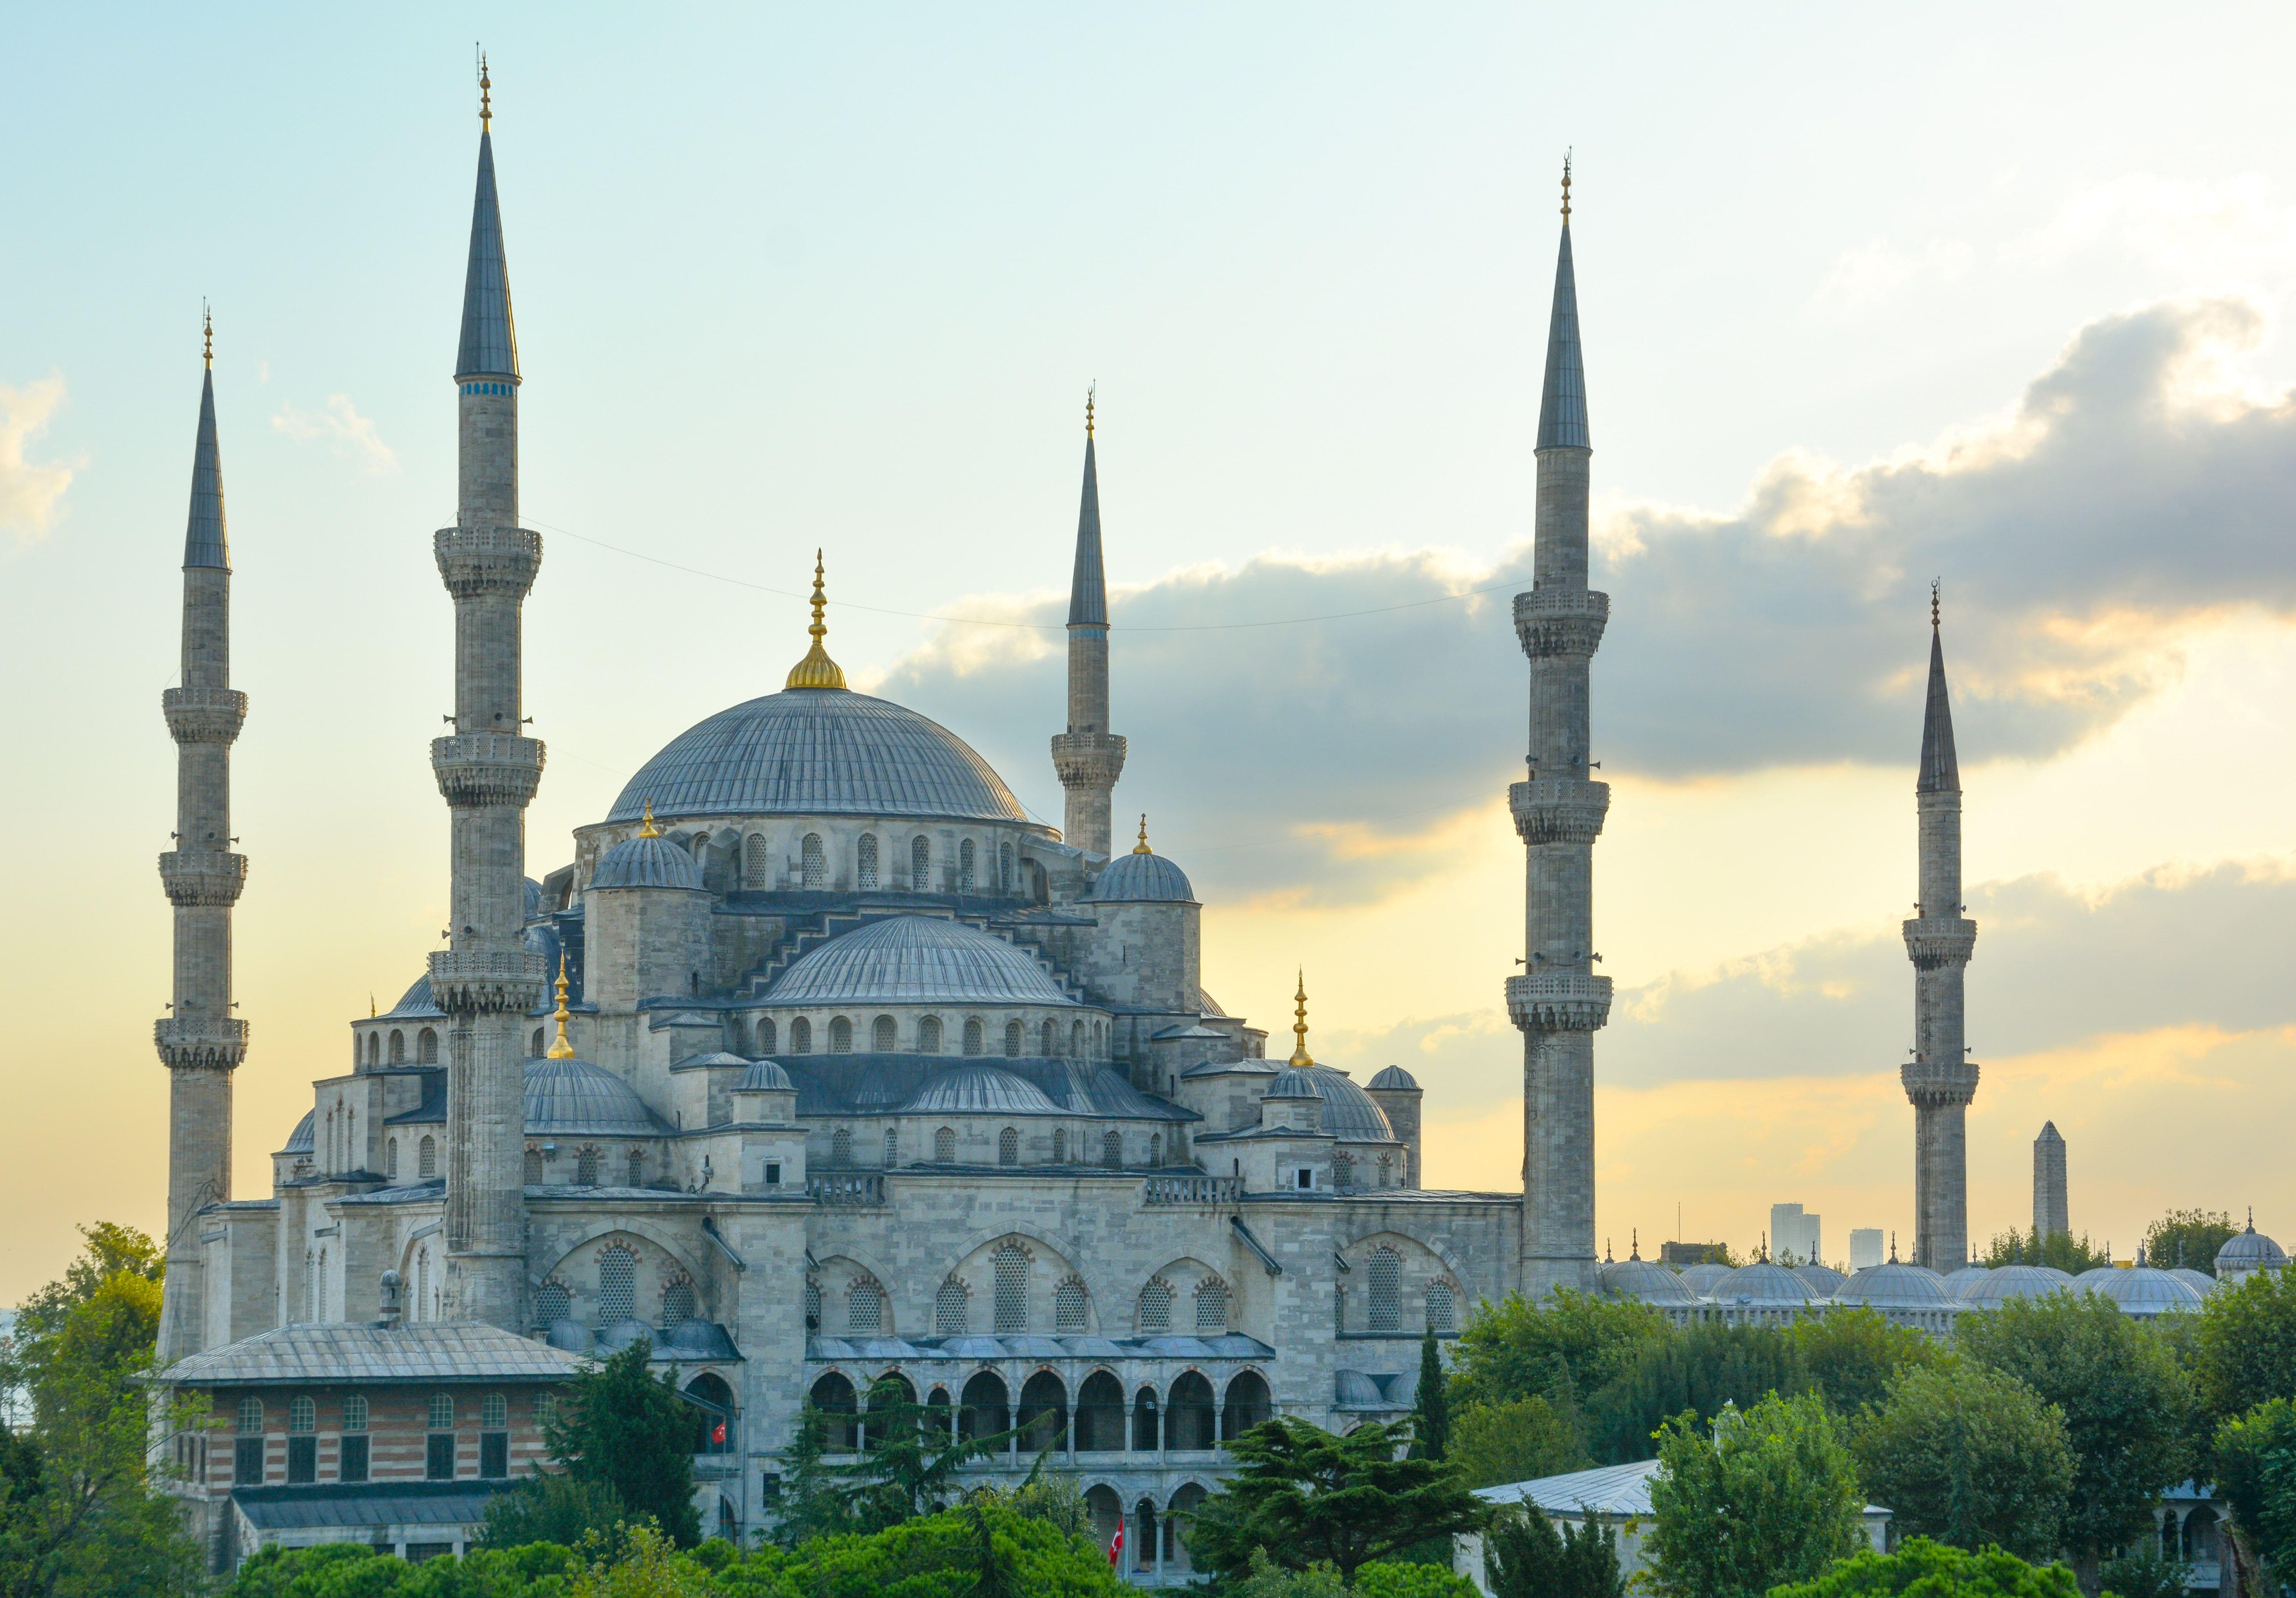 Hagia Sophia.jpg